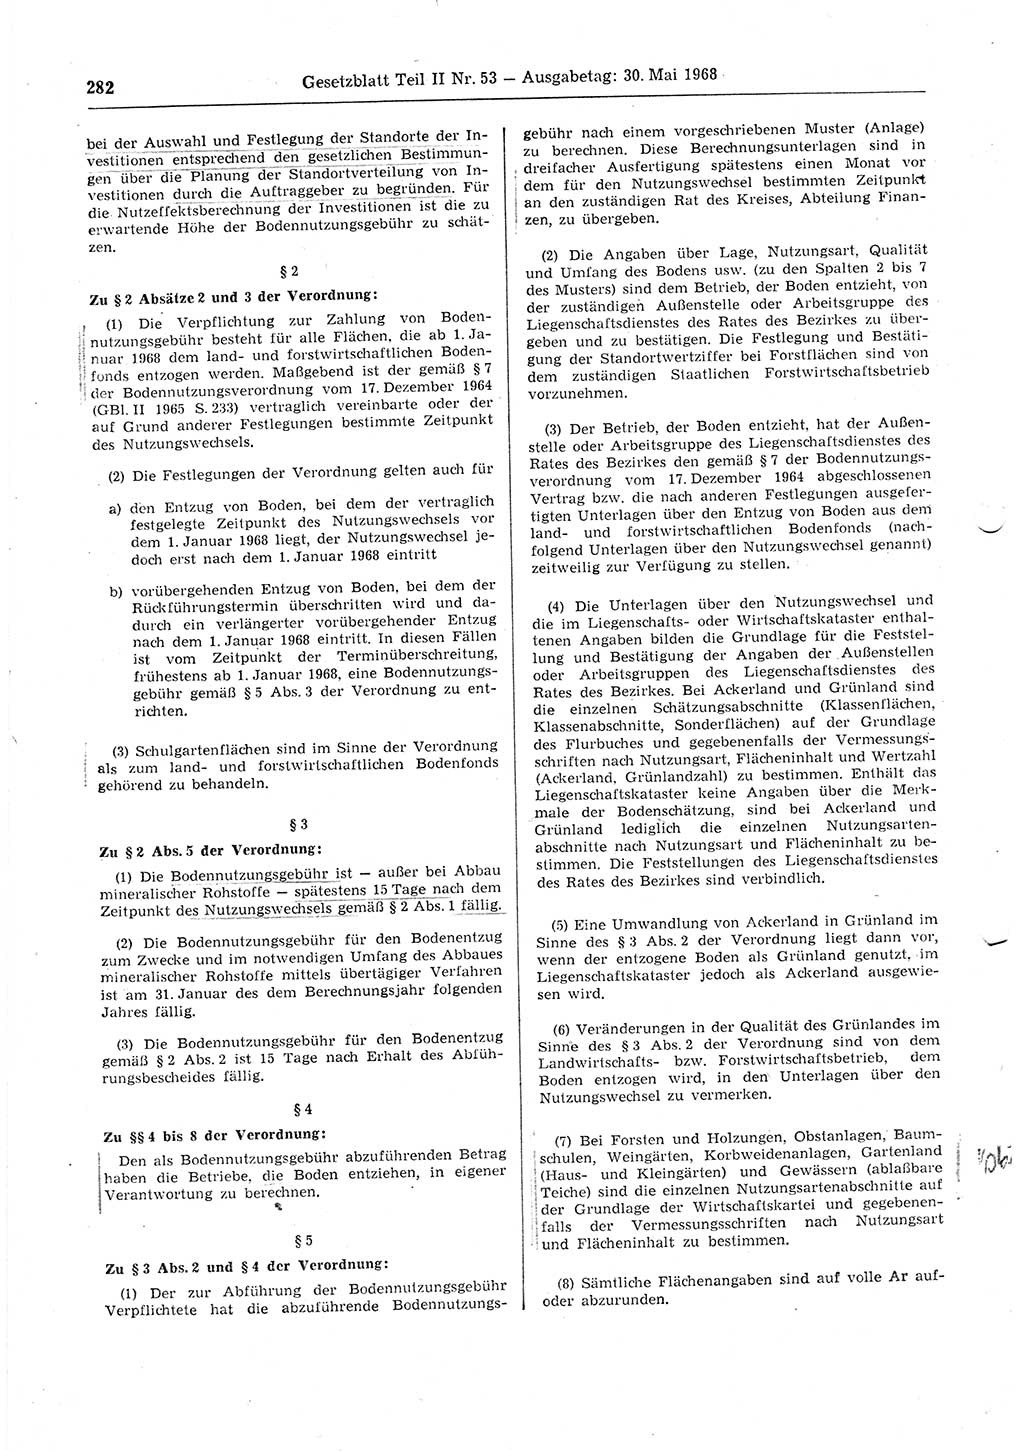 Gesetzblatt (GBl.) der Deutschen Demokratischen Republik (DDR) Teil ⅠⅠ 1968, Seite 282 (GBl. DDR ⅠⅠ 1968, S. 282)